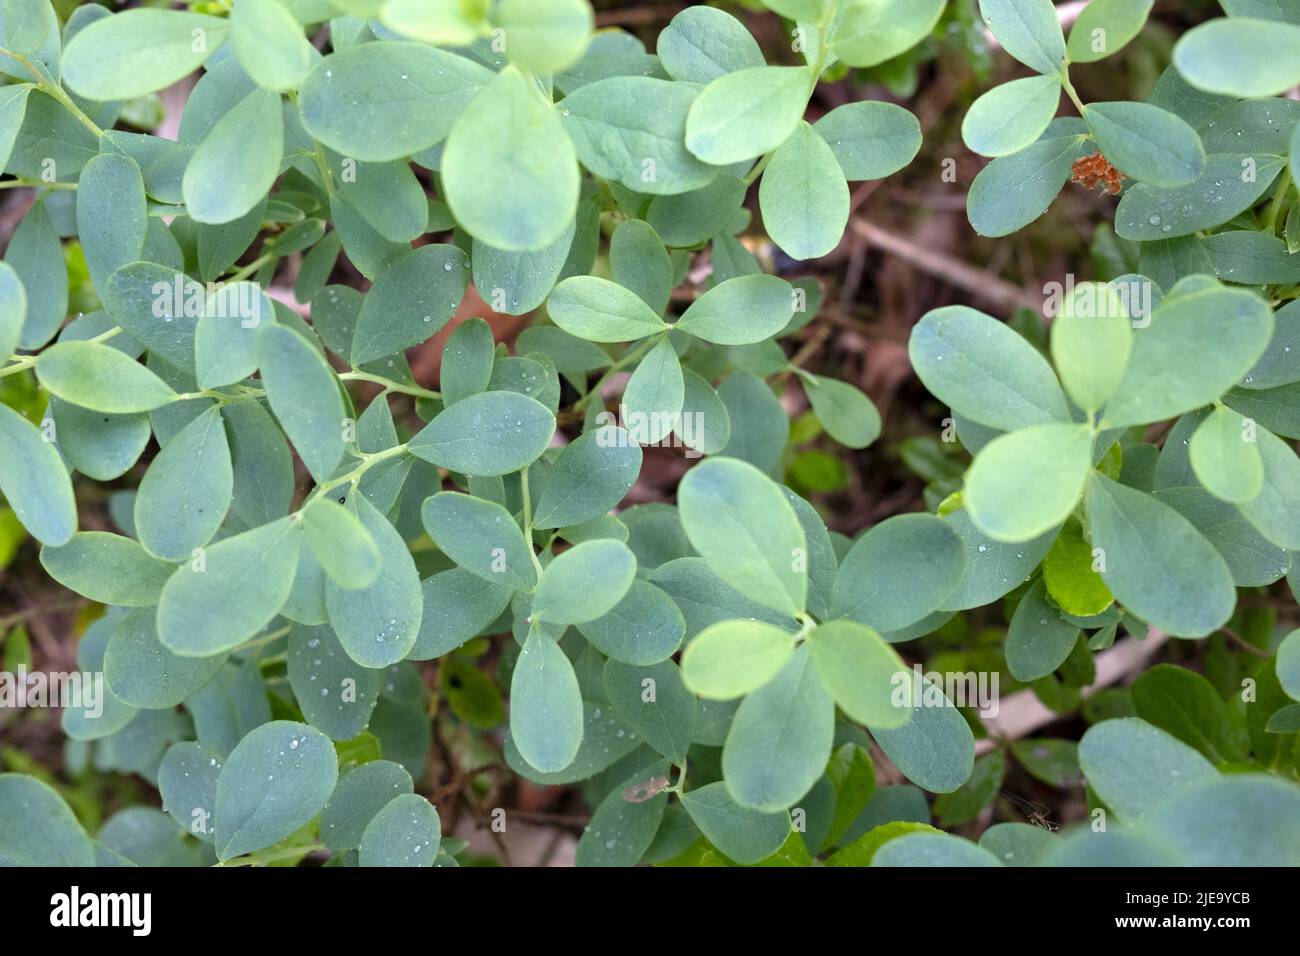 Vaccinium uliginosum, bog bilberry, bog blueberry, or northern bilberry or western blueberry leaves in closeup Stock Photo